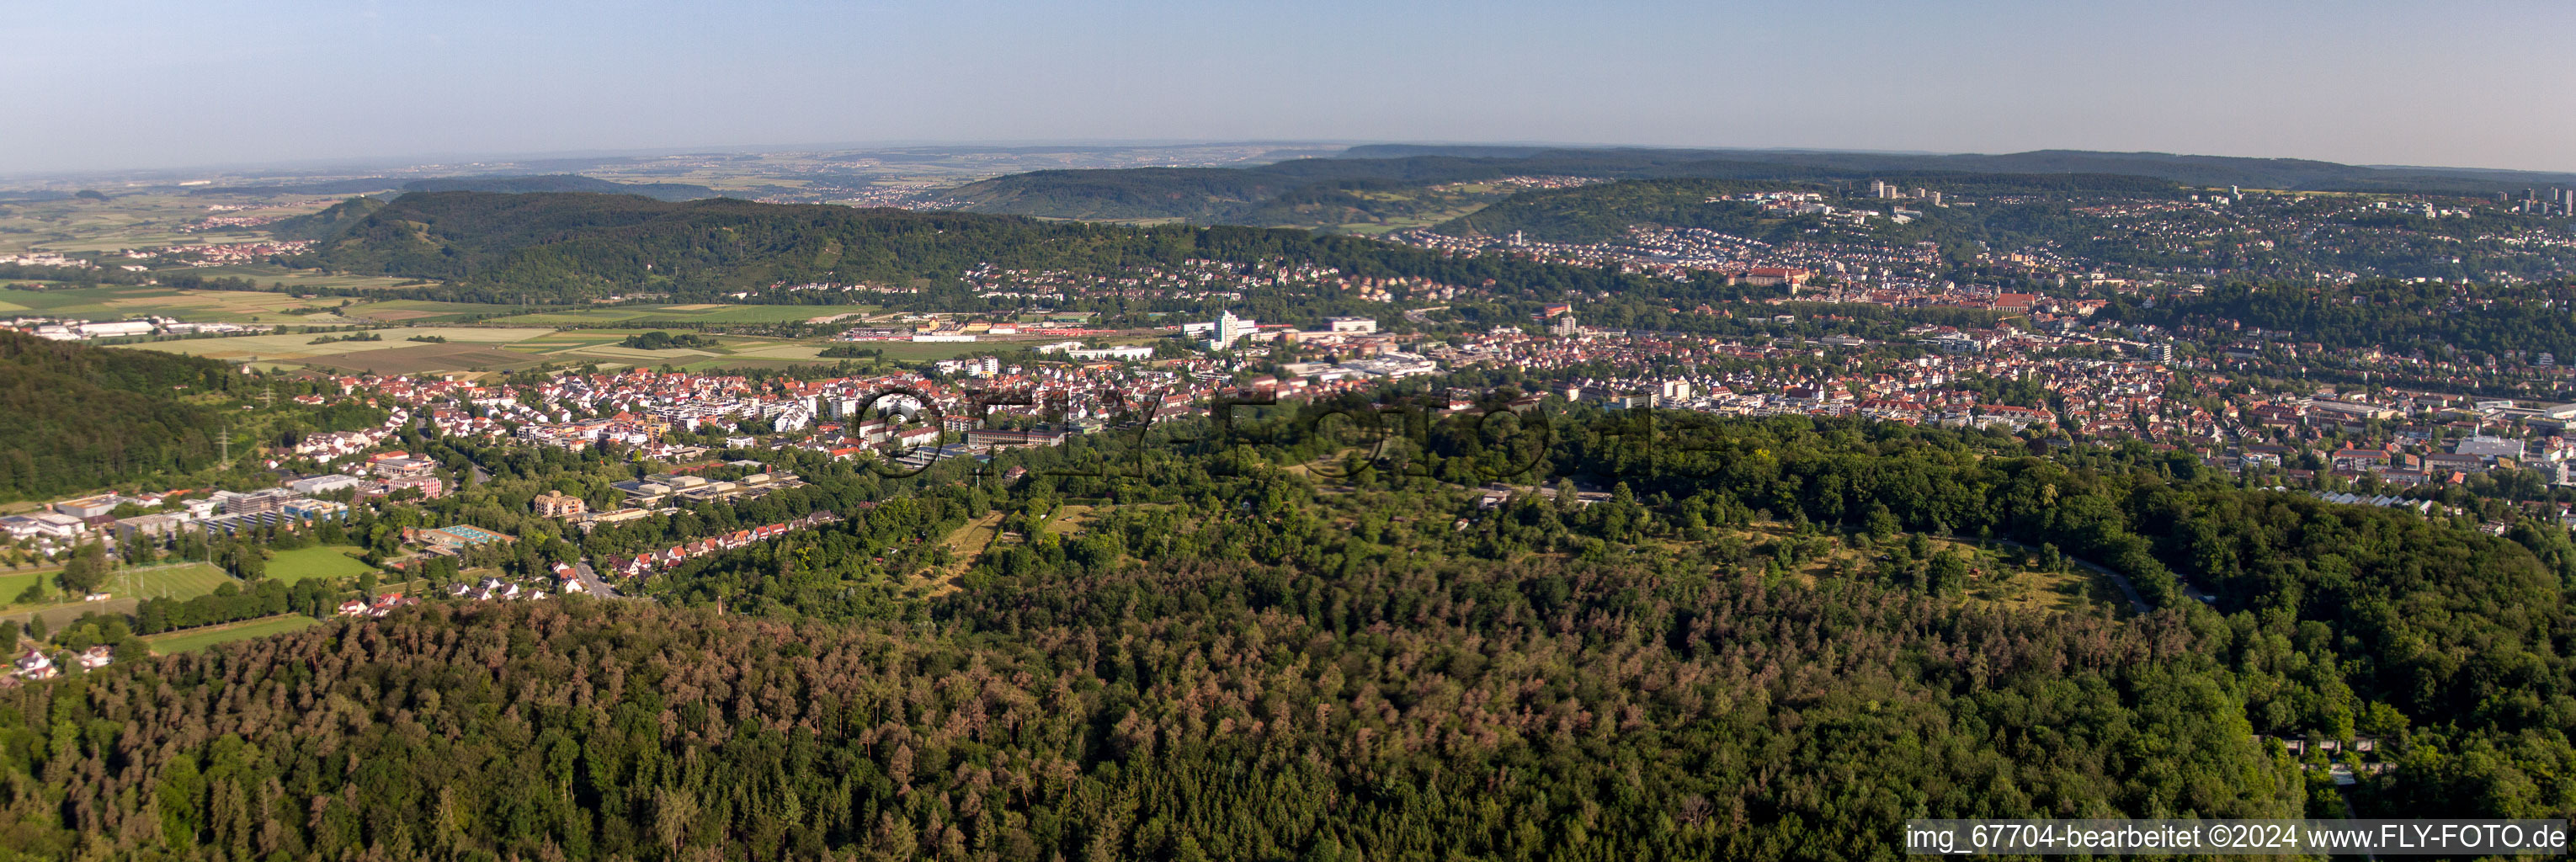 Vue aérienne de Vue panoramique en perspective des rues et des maisons des quartiers résidentiels à Tübingen dans le département Bade-Wurtemberg, Allemagne